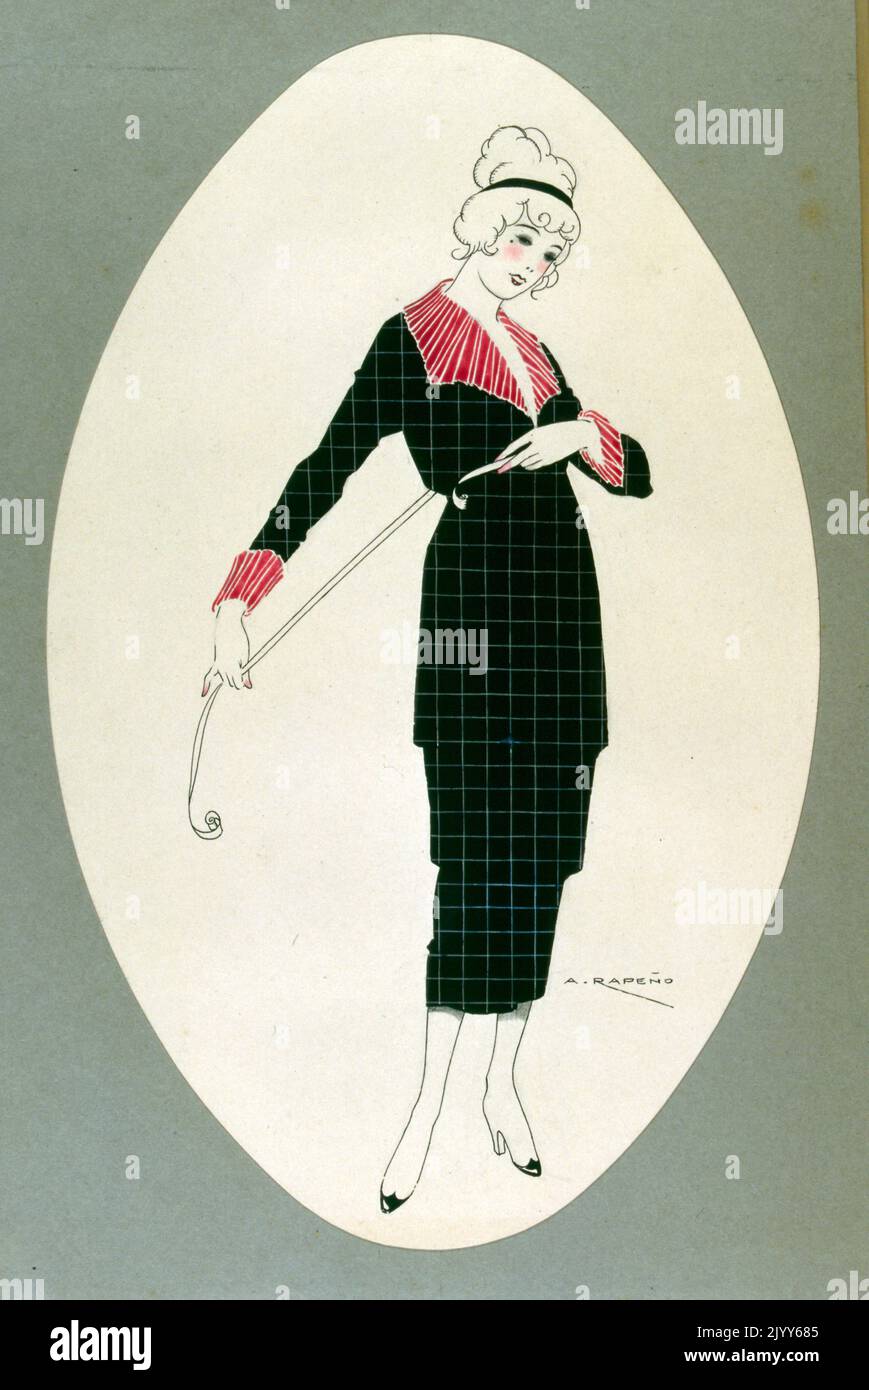 Modedesign Illustration einer Dame mit einem Maßband des Künstlers A. Rapeno. Stockfoto